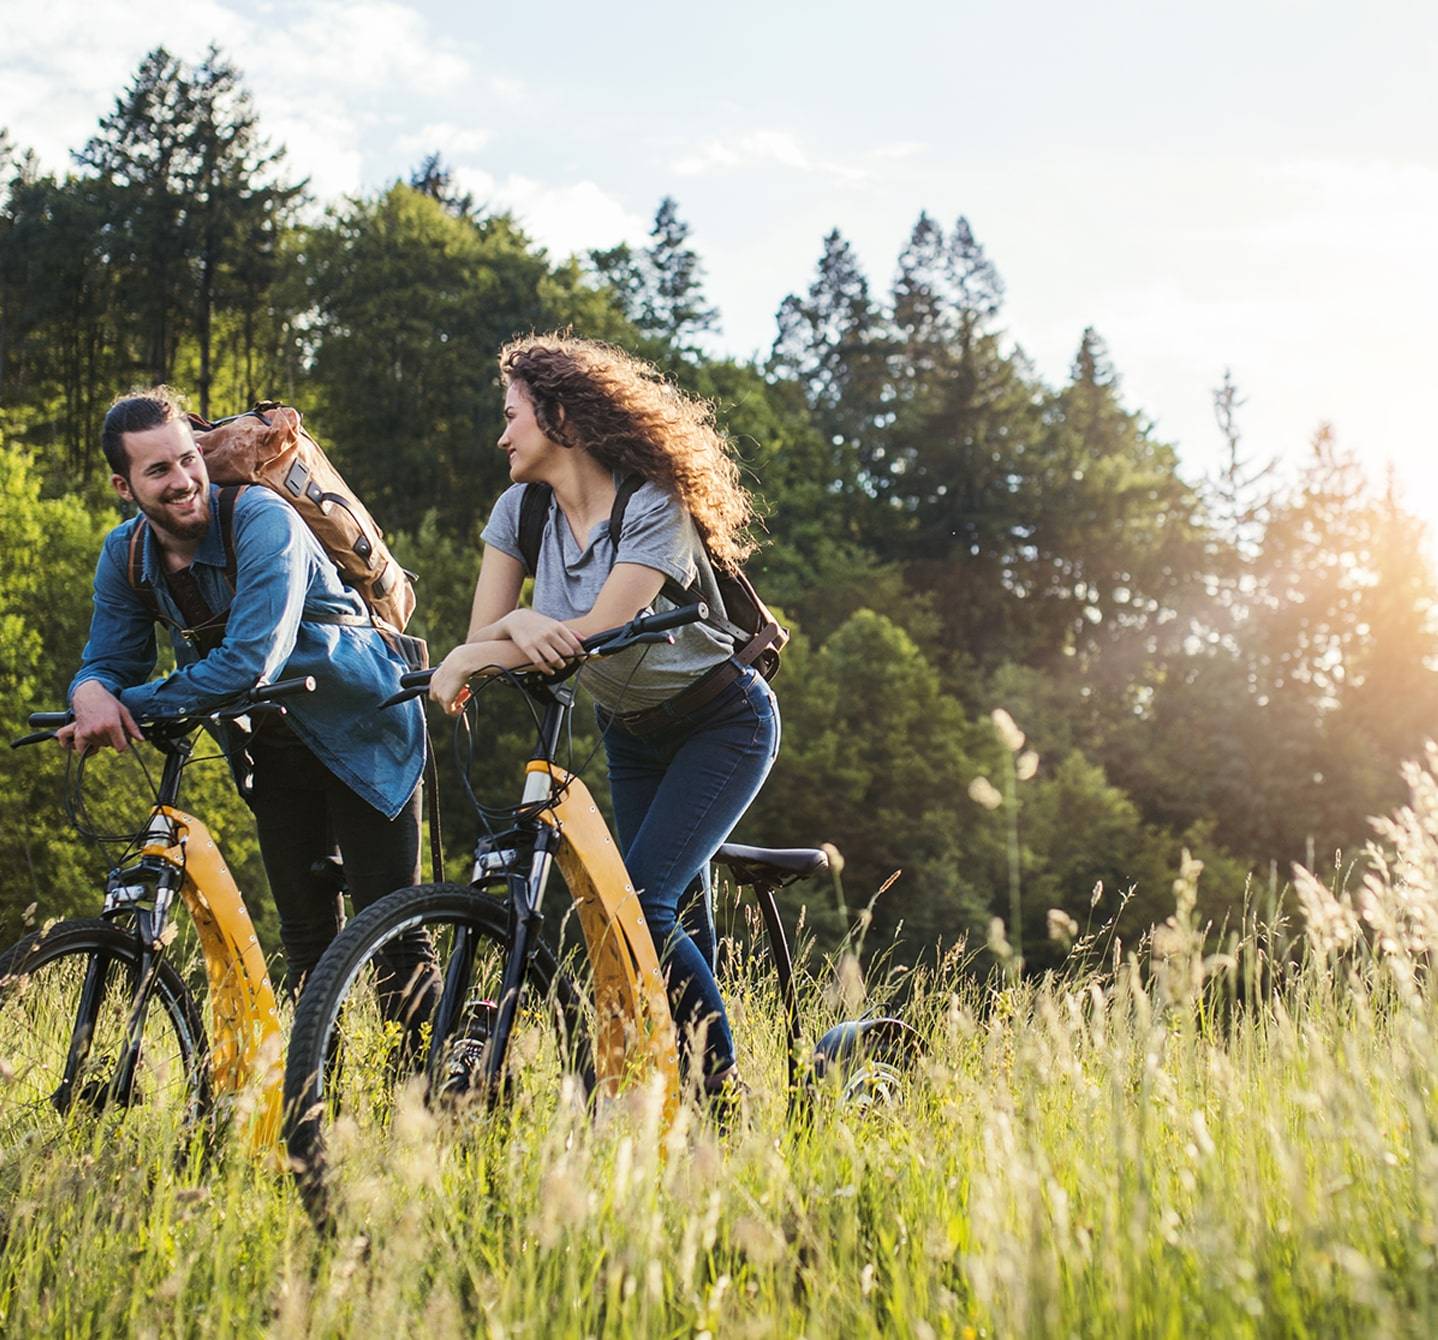  Définir l’allergie aux graminées? Ce jeune couple traverse une prairie à vélo et gère manifestement bien les symptômes.